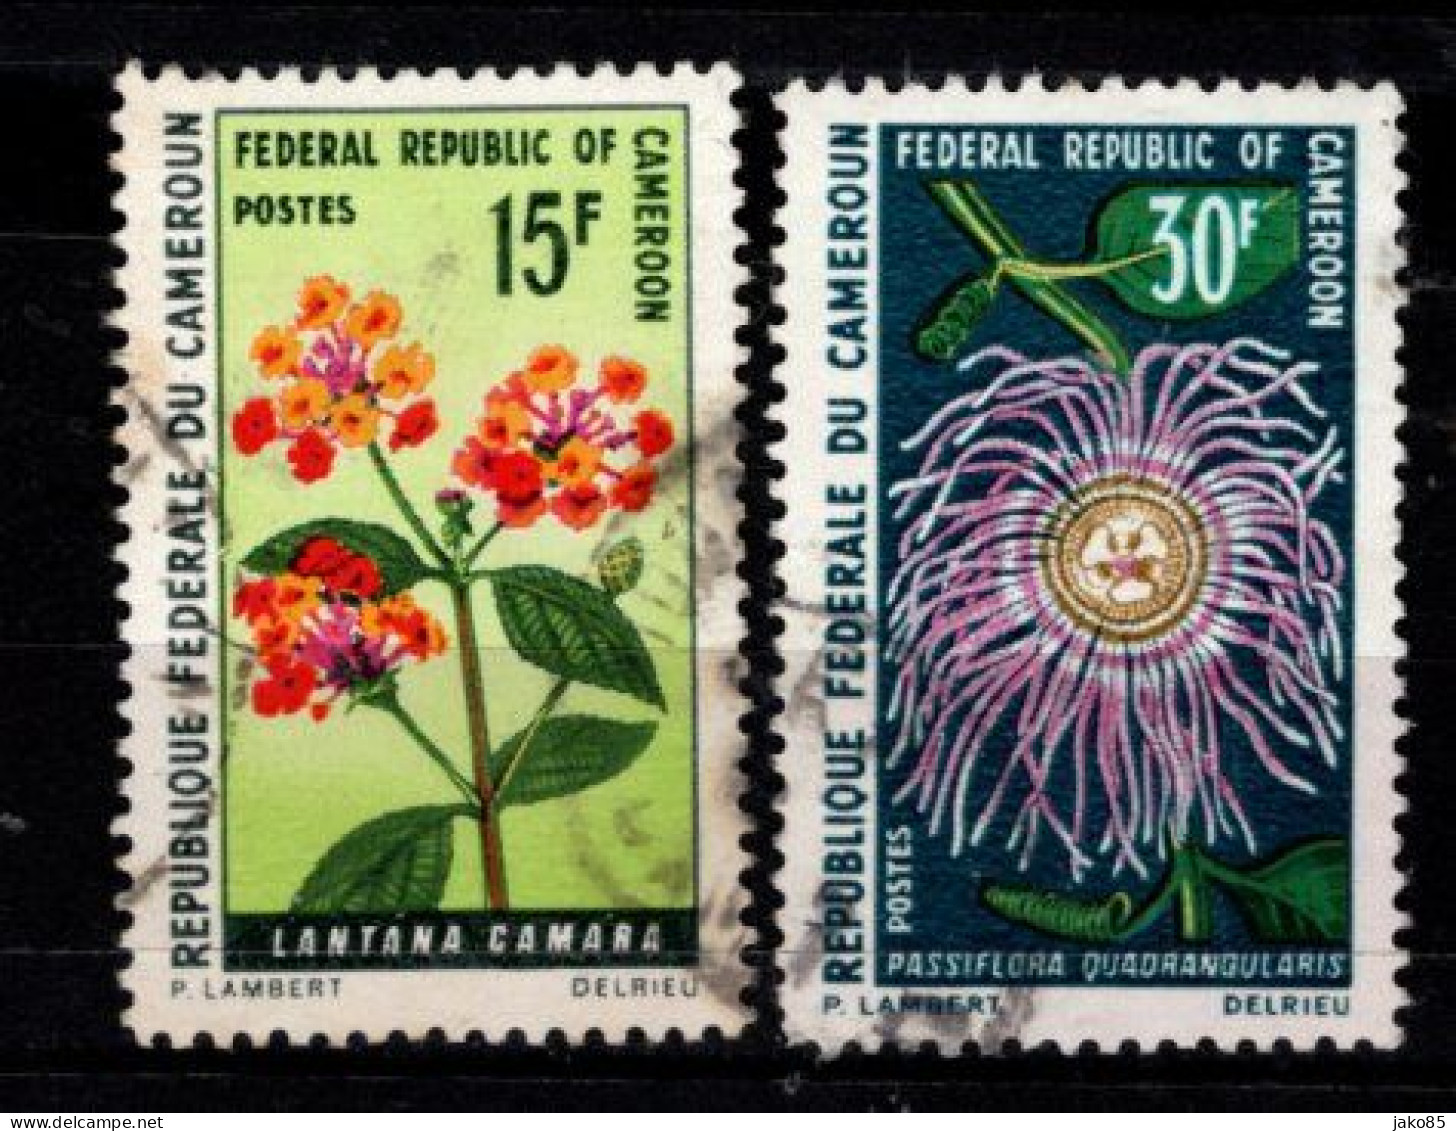 - CAMEROUN -1970 - YT N° 481 / 482 - Oblitérés - Plantes - Cameroun (1960-...)